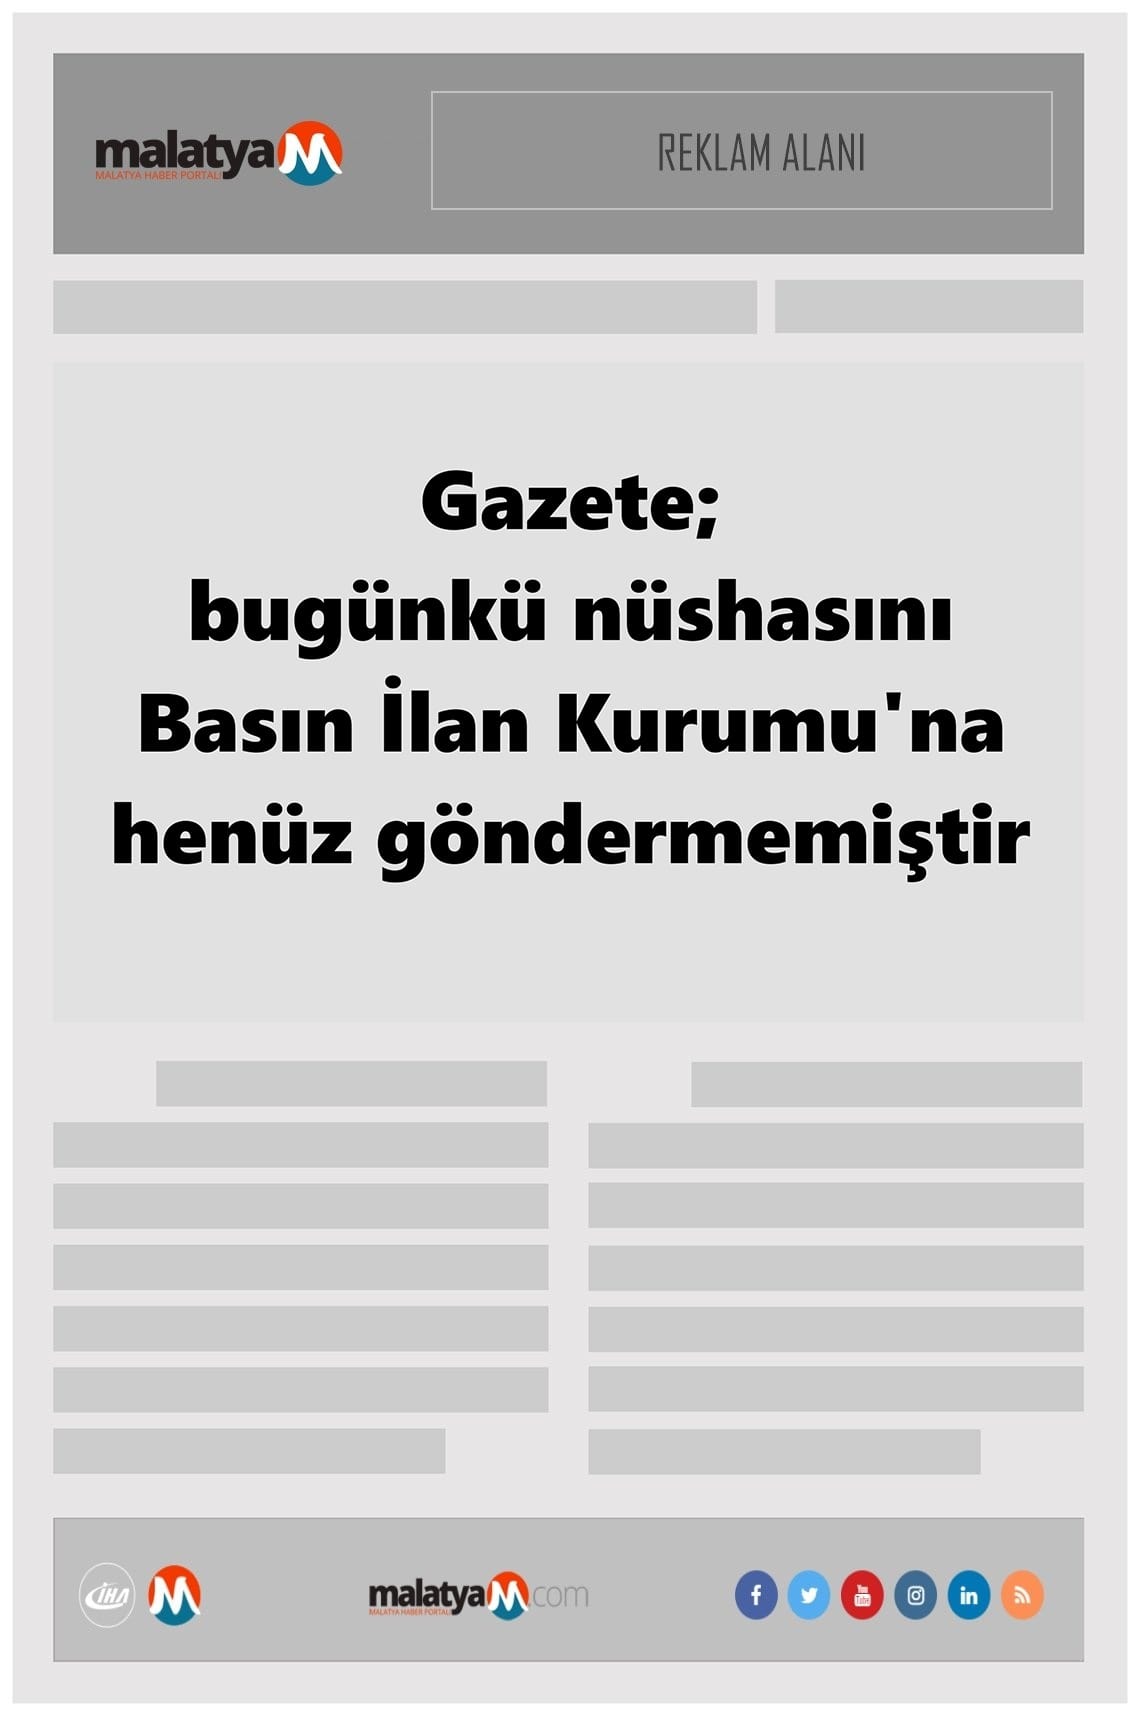 Yeni Malatya gazetesi manşet ilk sayfa oku